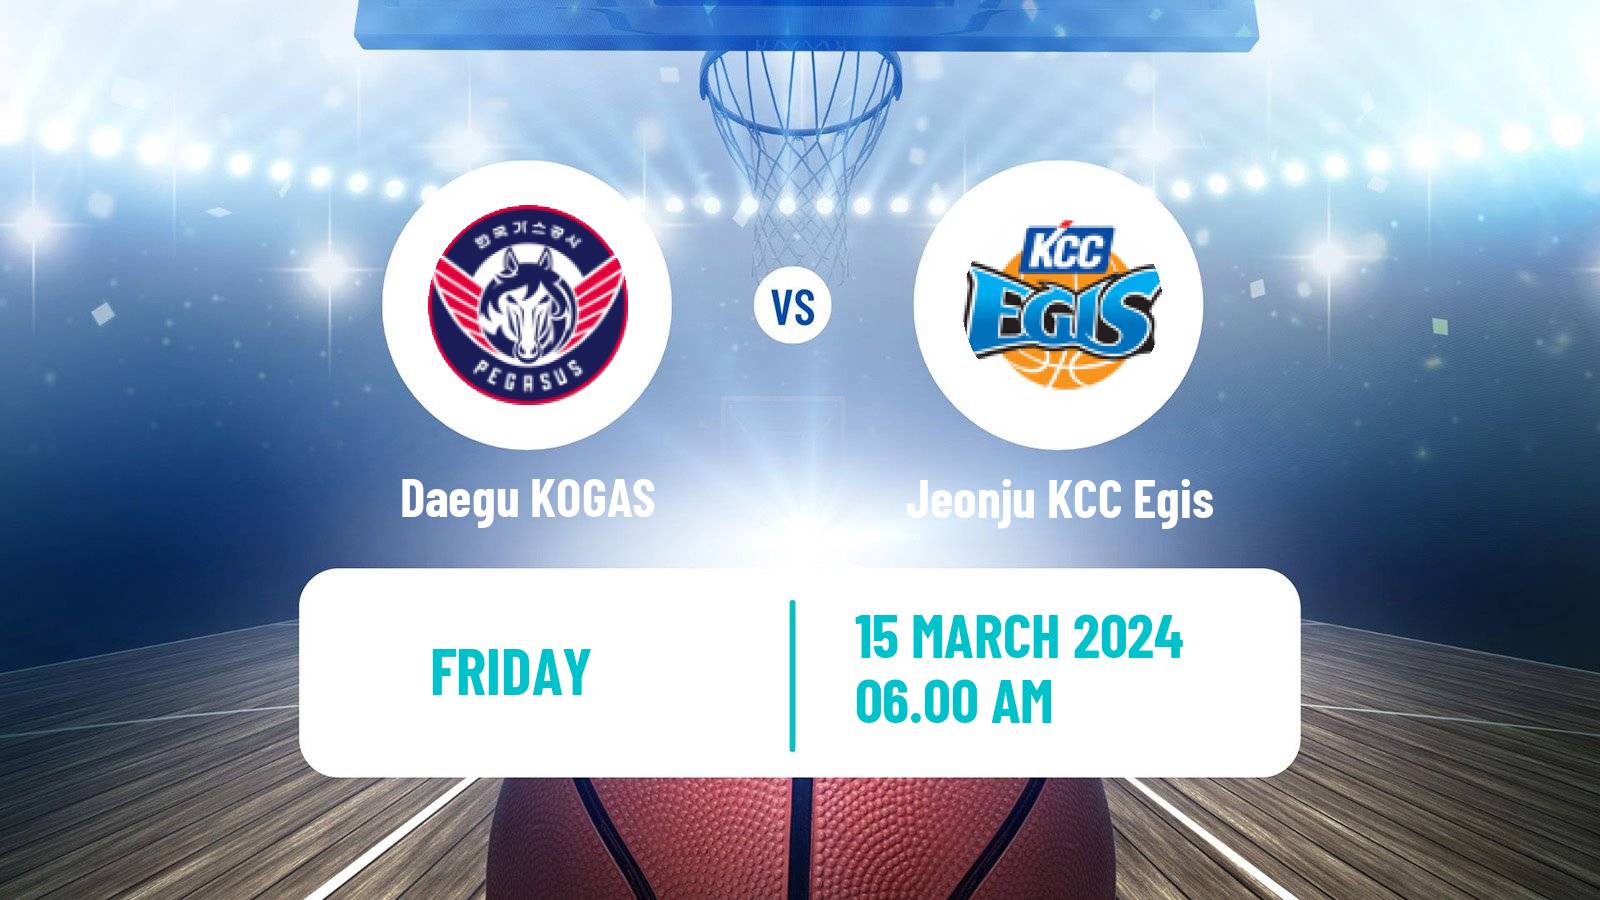 Basketball KBL Daegu KOGAS - Jeonju KCC Egis